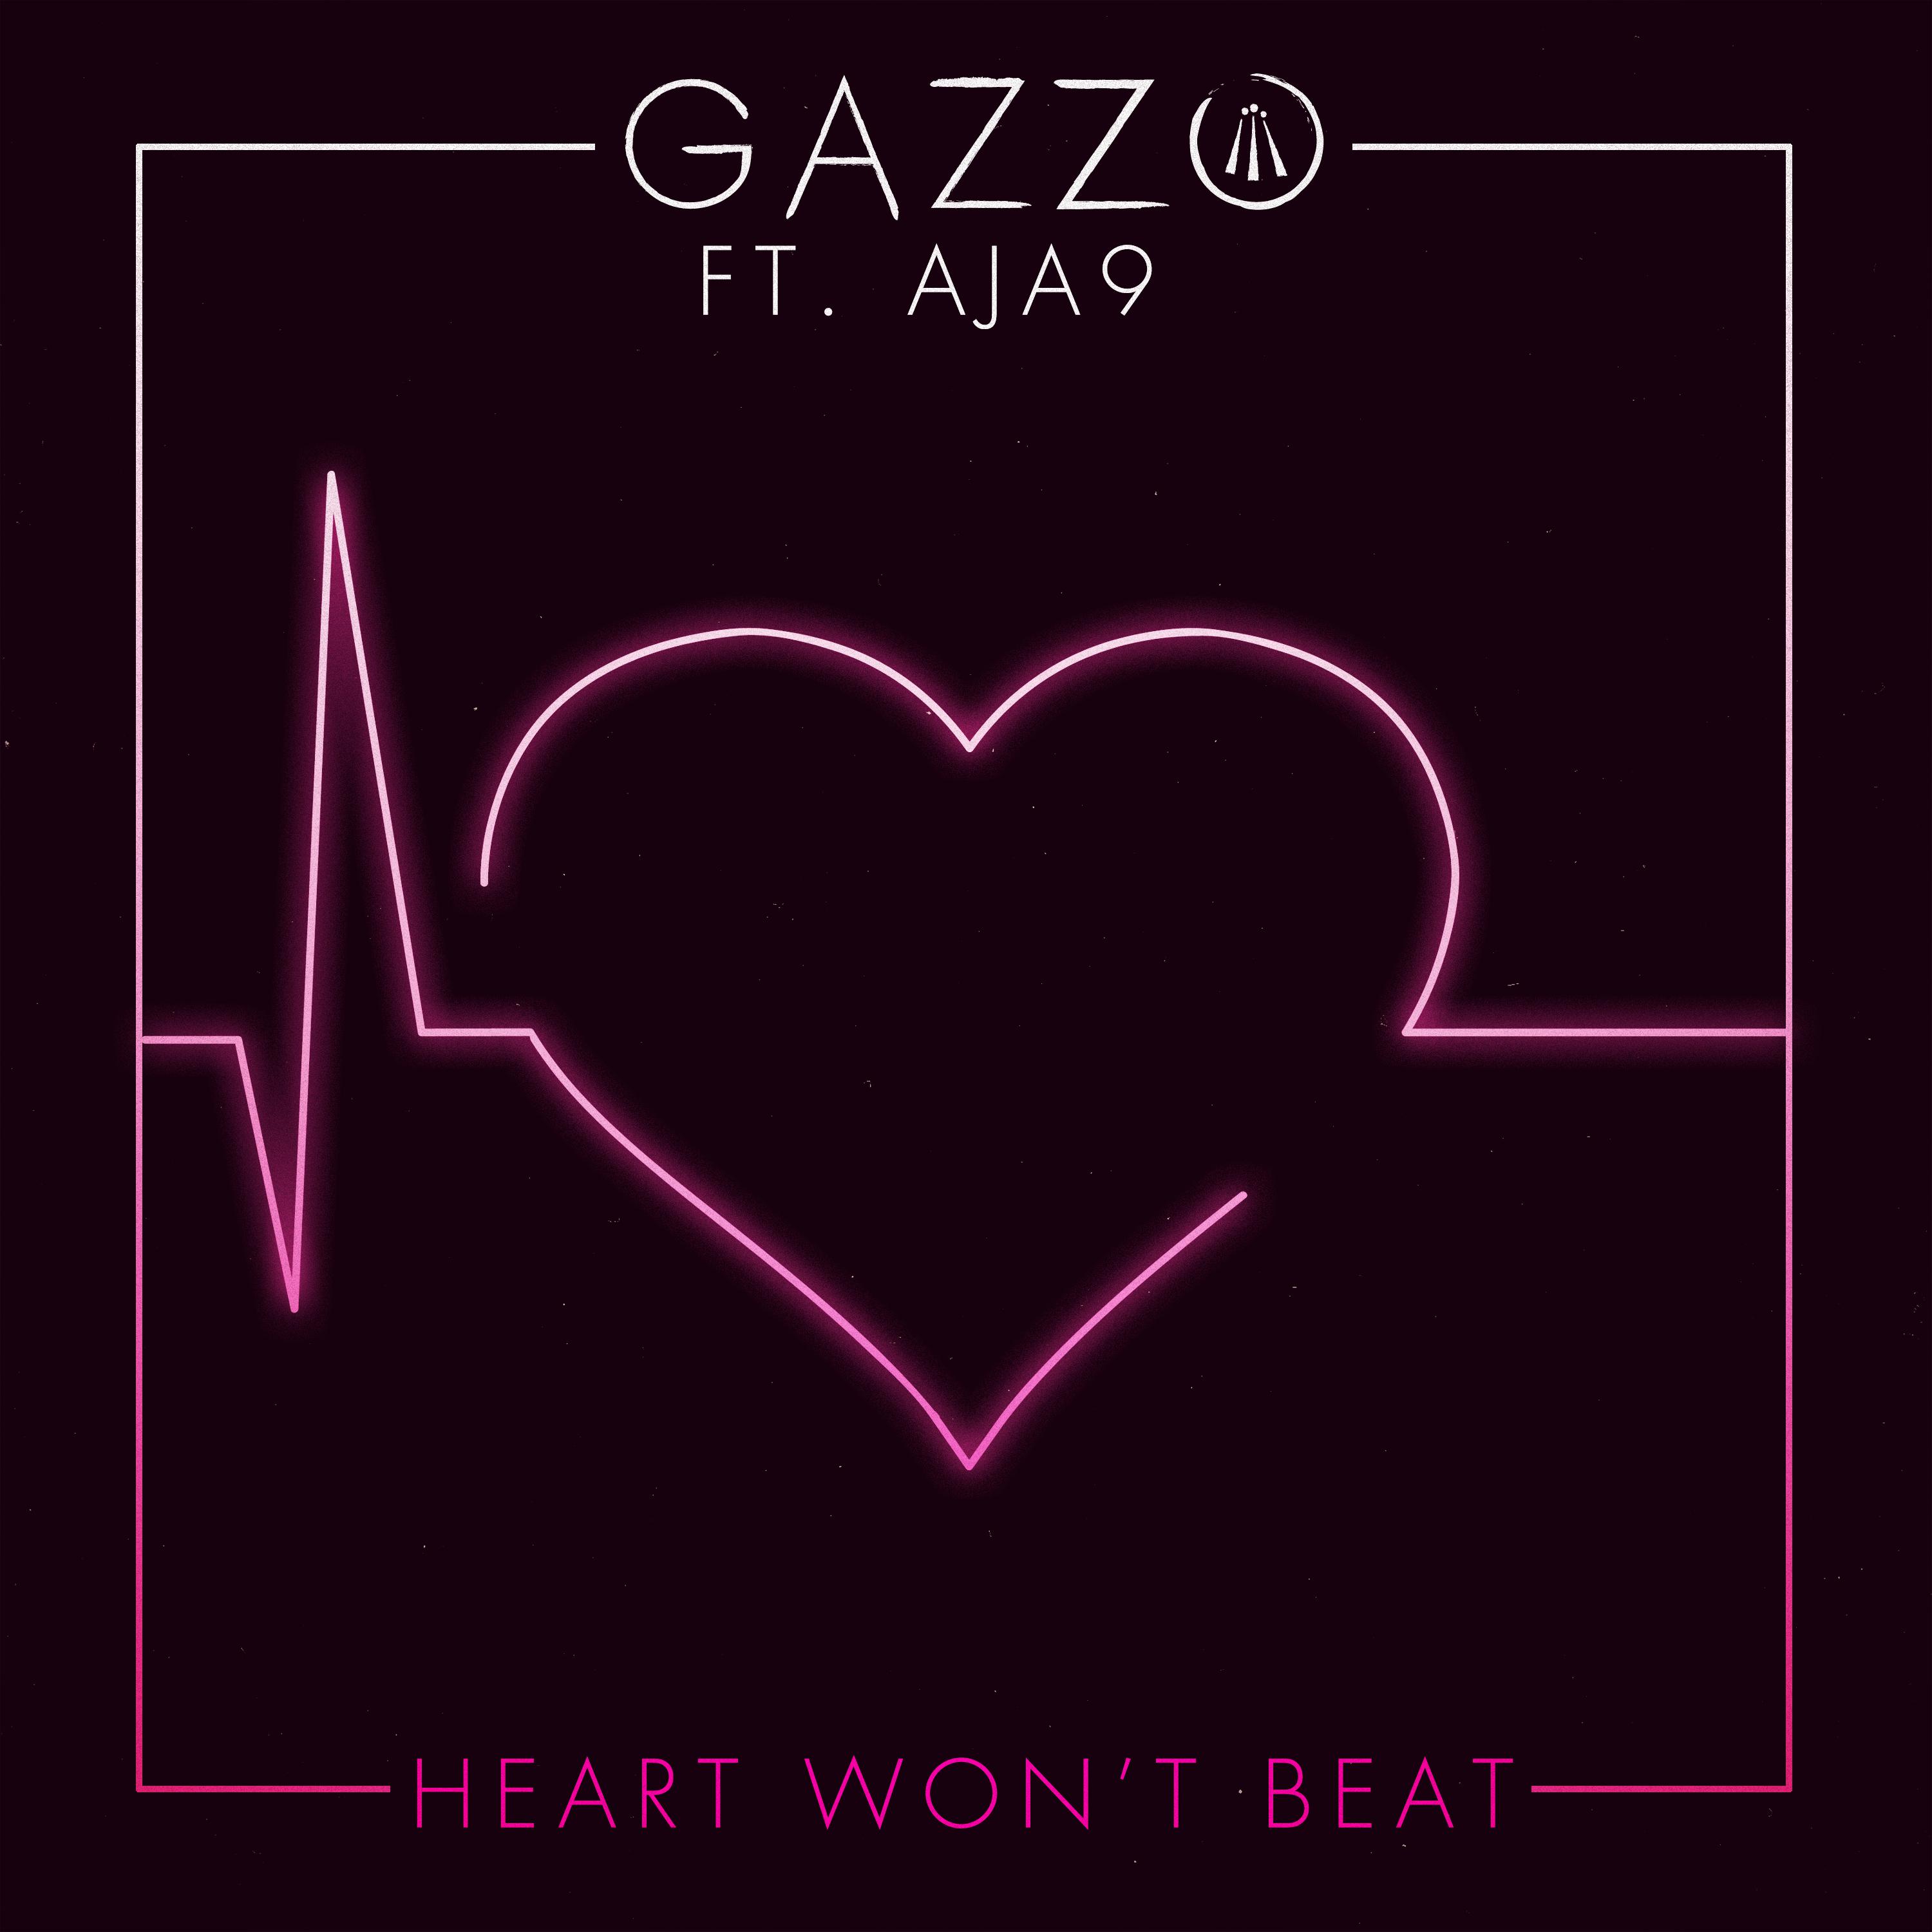 Heart Won't Beat (feat. Aja9)